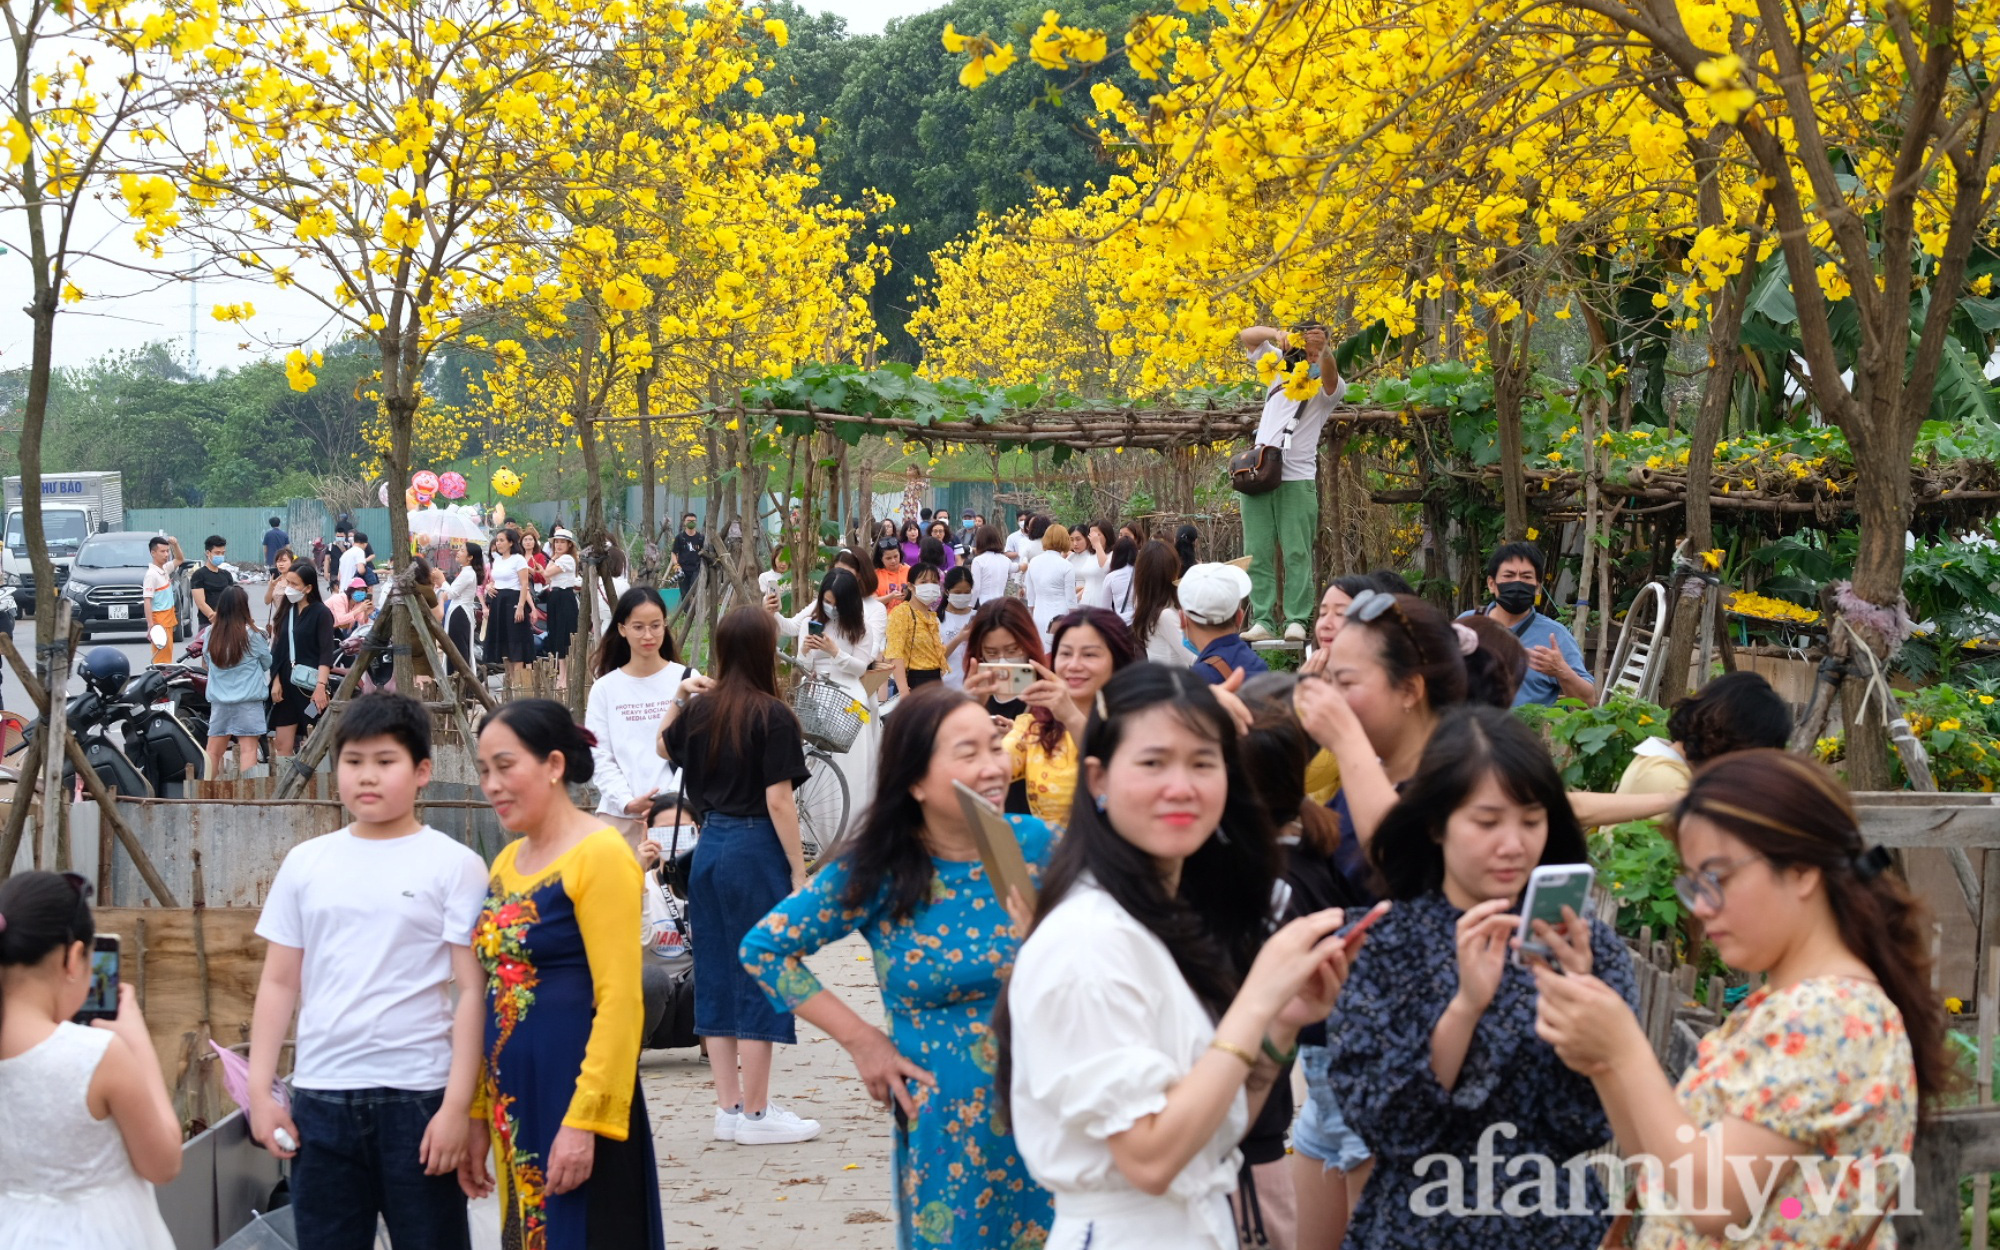 Đường hoa phong linh Park City vừa đóng cửa, người Hà Nội lại đổ xô tới chụp ảnh tại 1 địa điểm khác tạo nên khung cảnh đông đúc, hỗn loạn